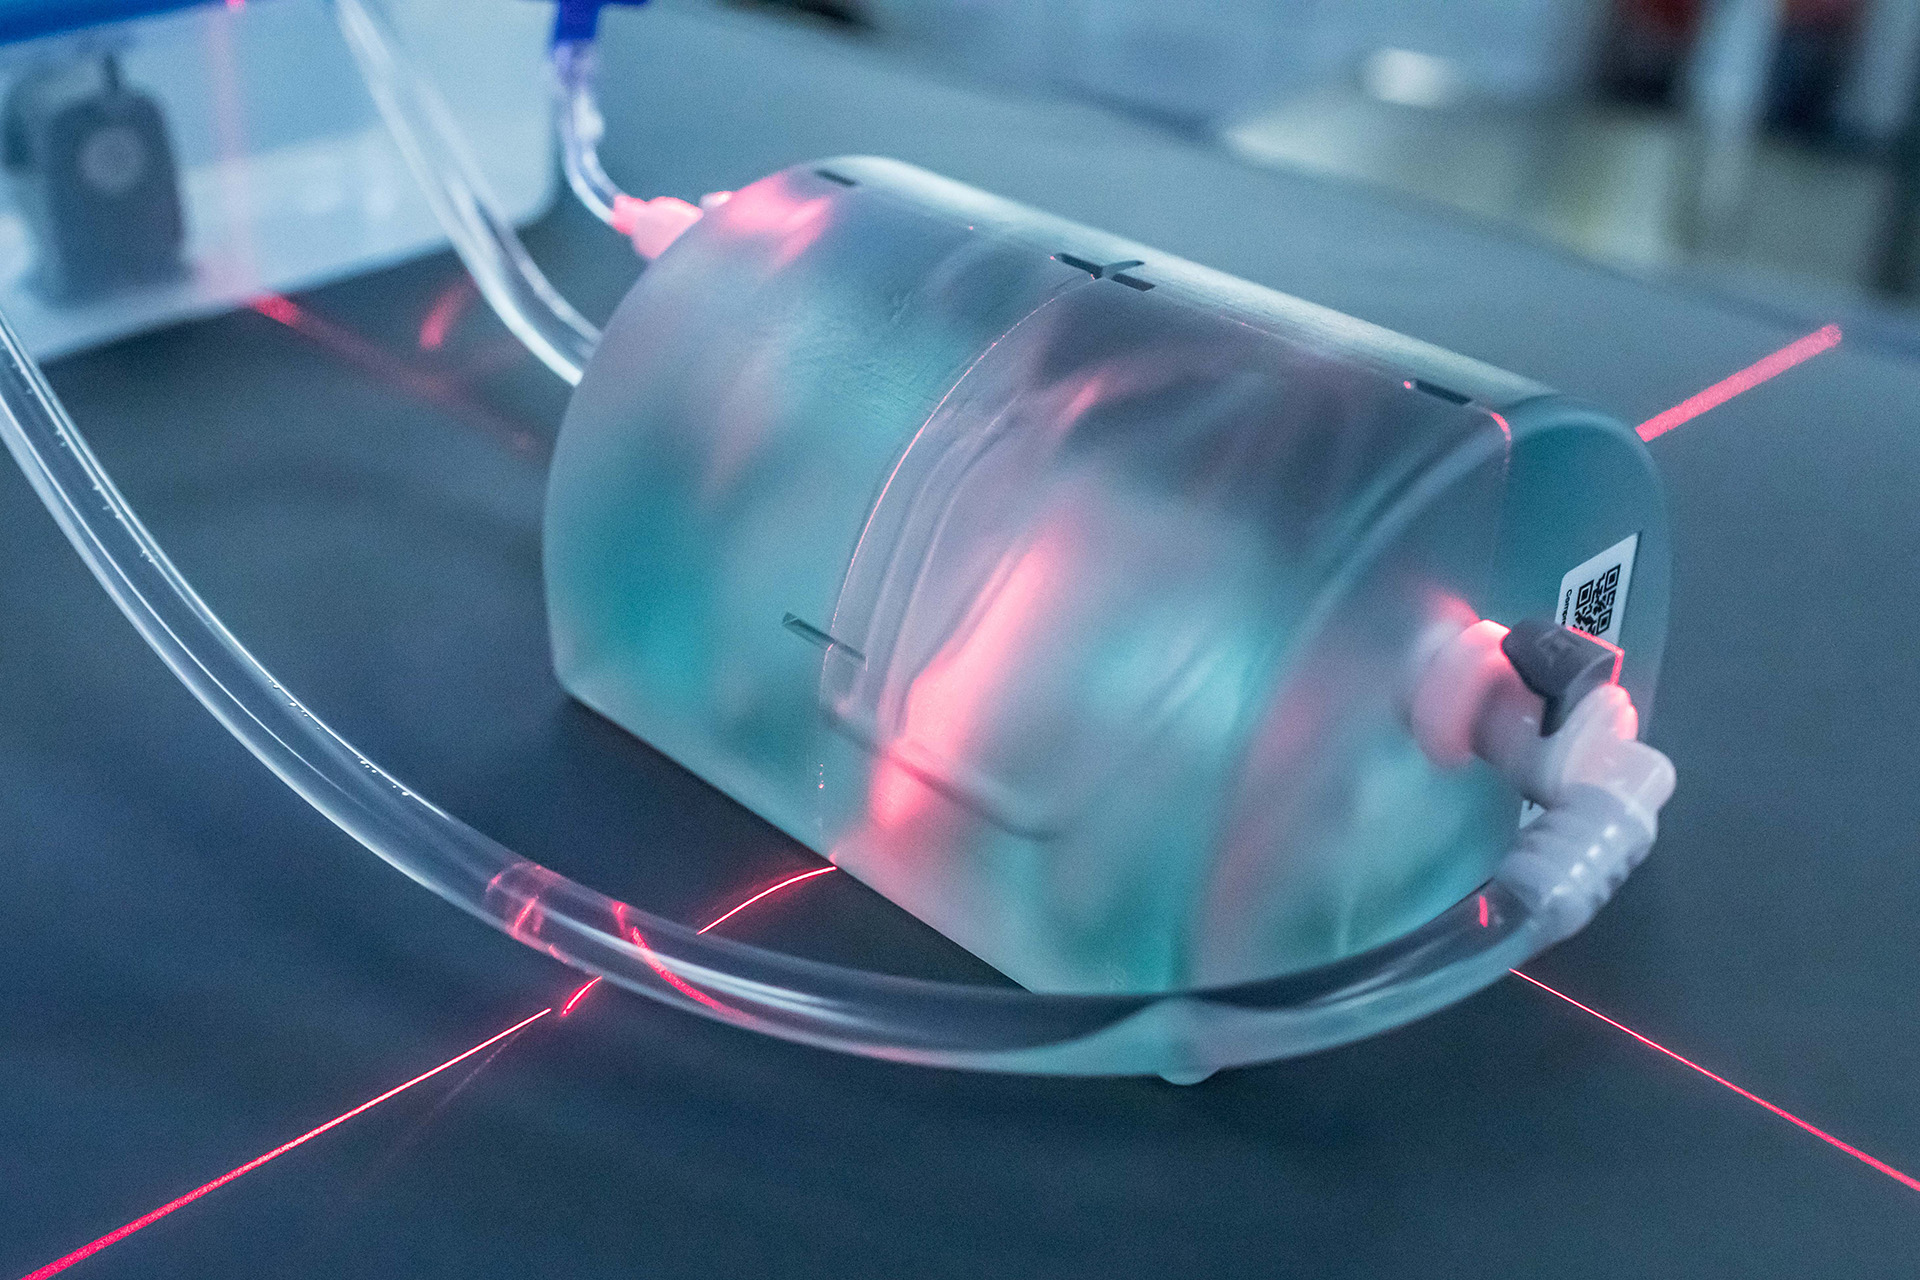 Comprehenso entwickelt und produziert kompakte Trainingsphantome für ein praxisnahes Nutzertraining am Angiographiegerät.